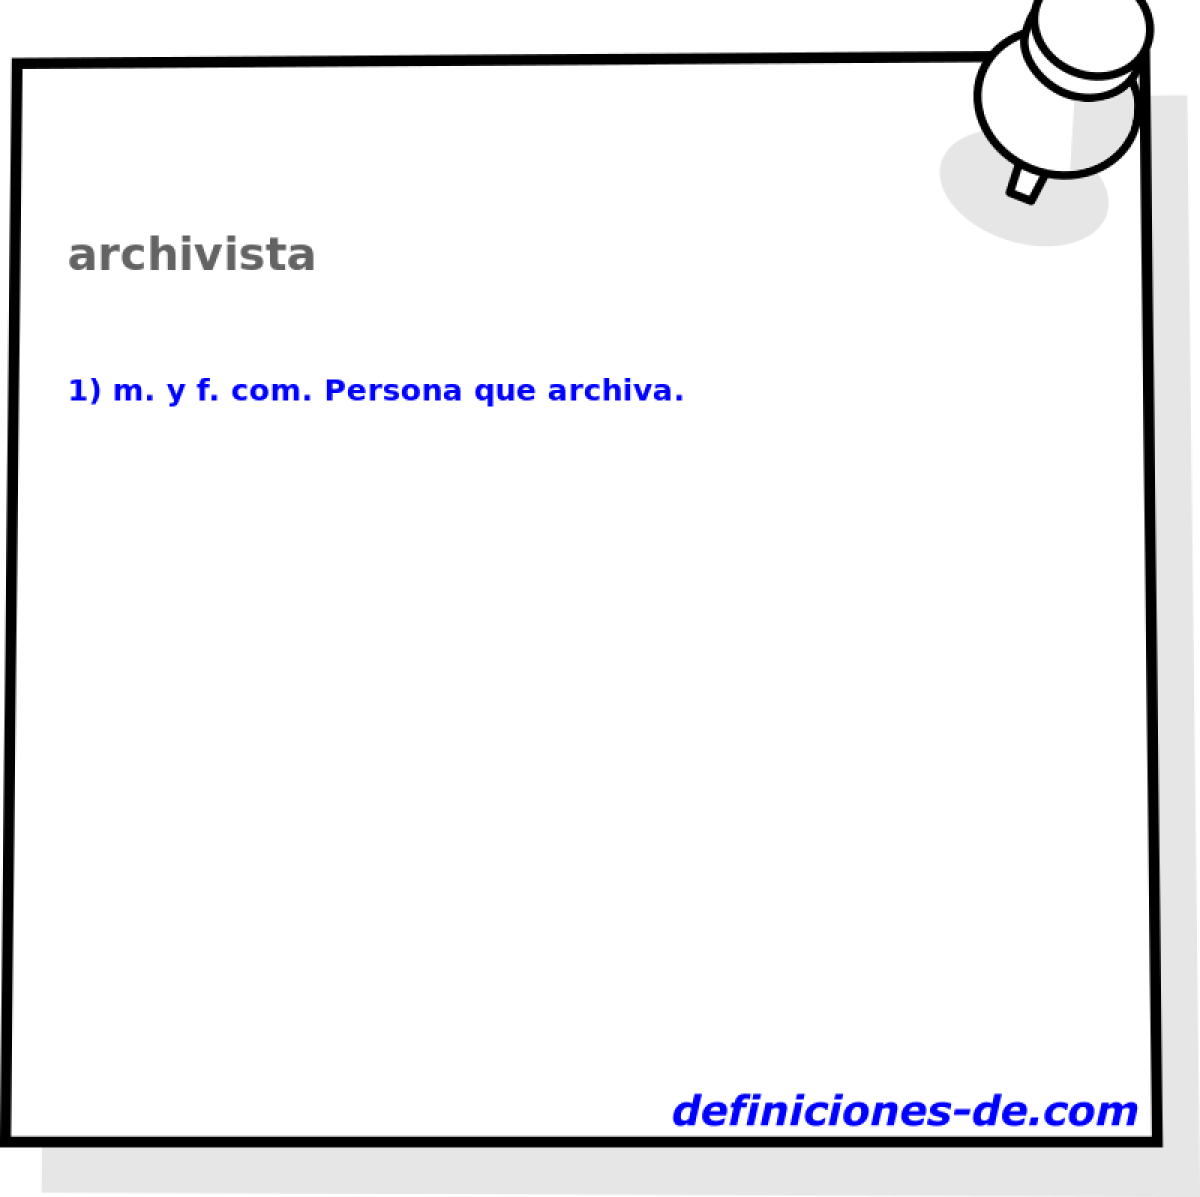 archivista 